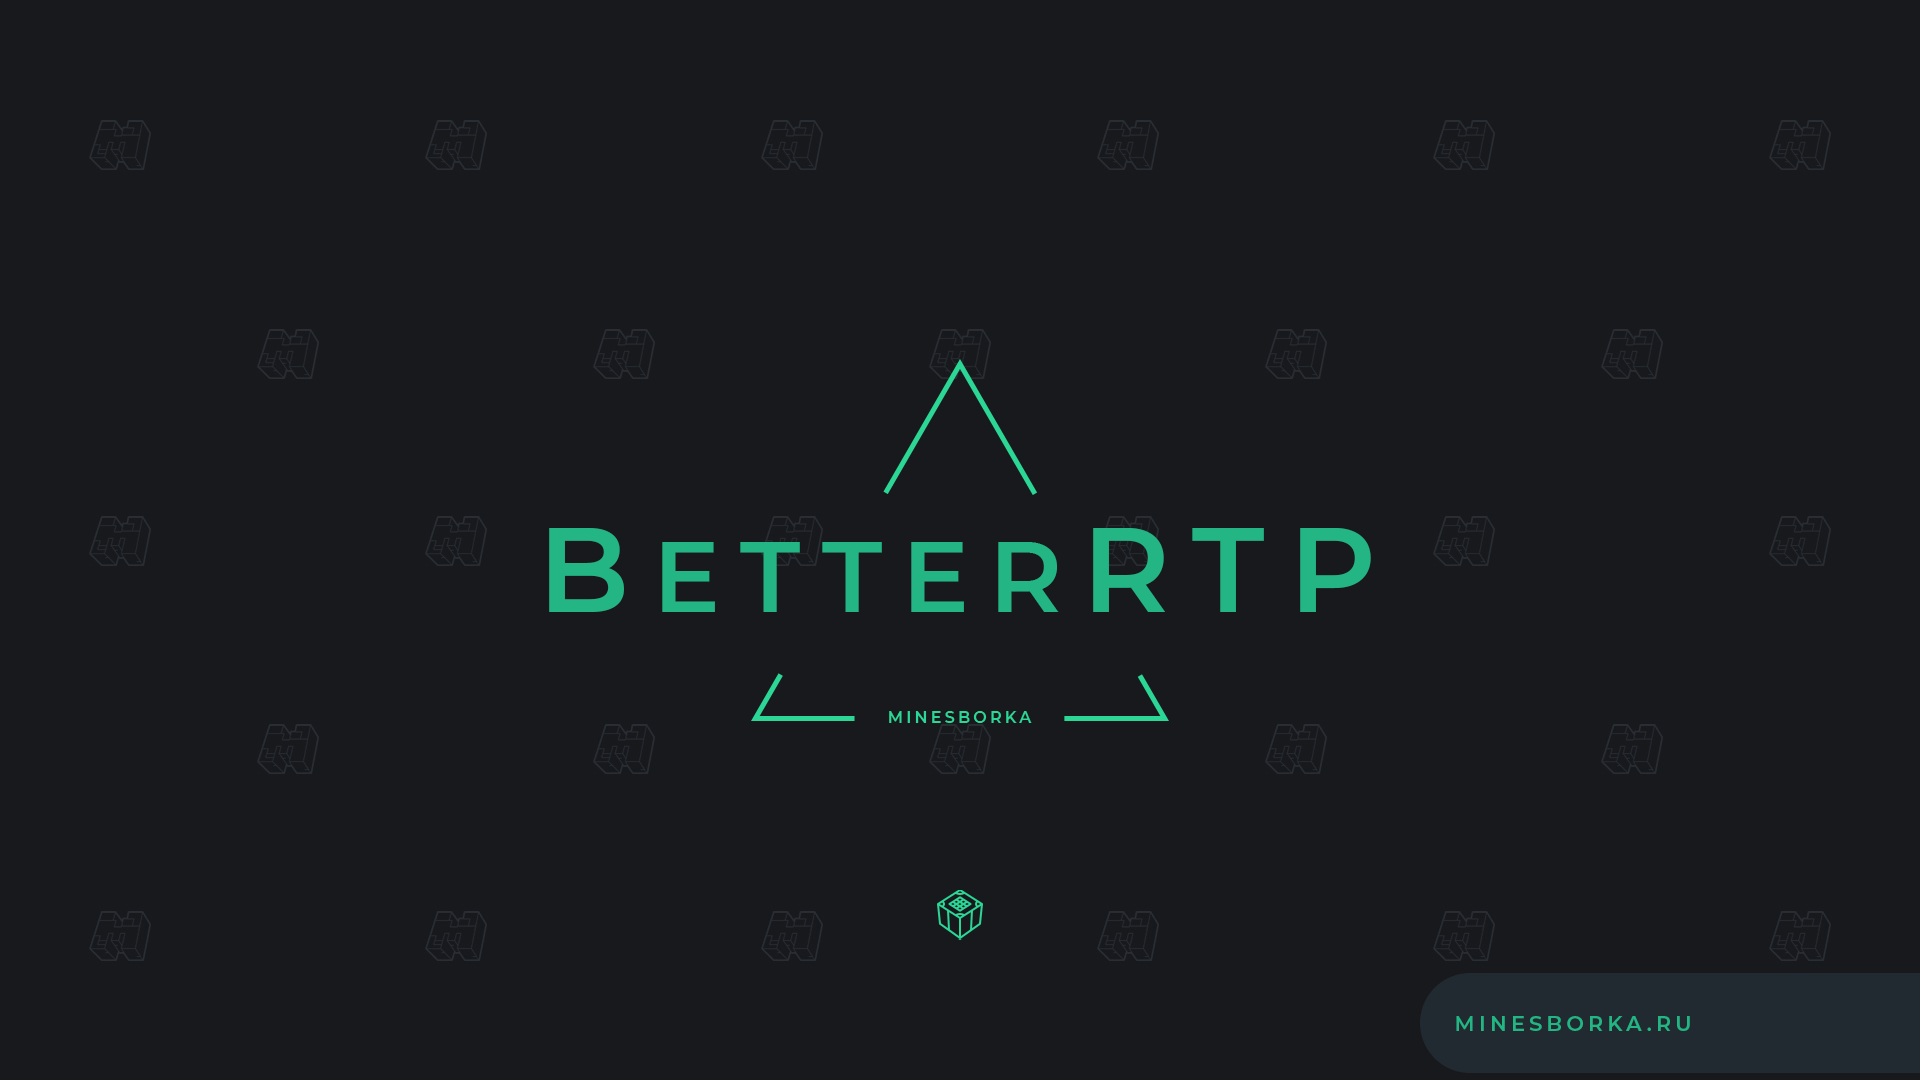 Скачать плагин BetterRTP | Рандомная телепортация по миру в Майнкрафт с полной настройкой